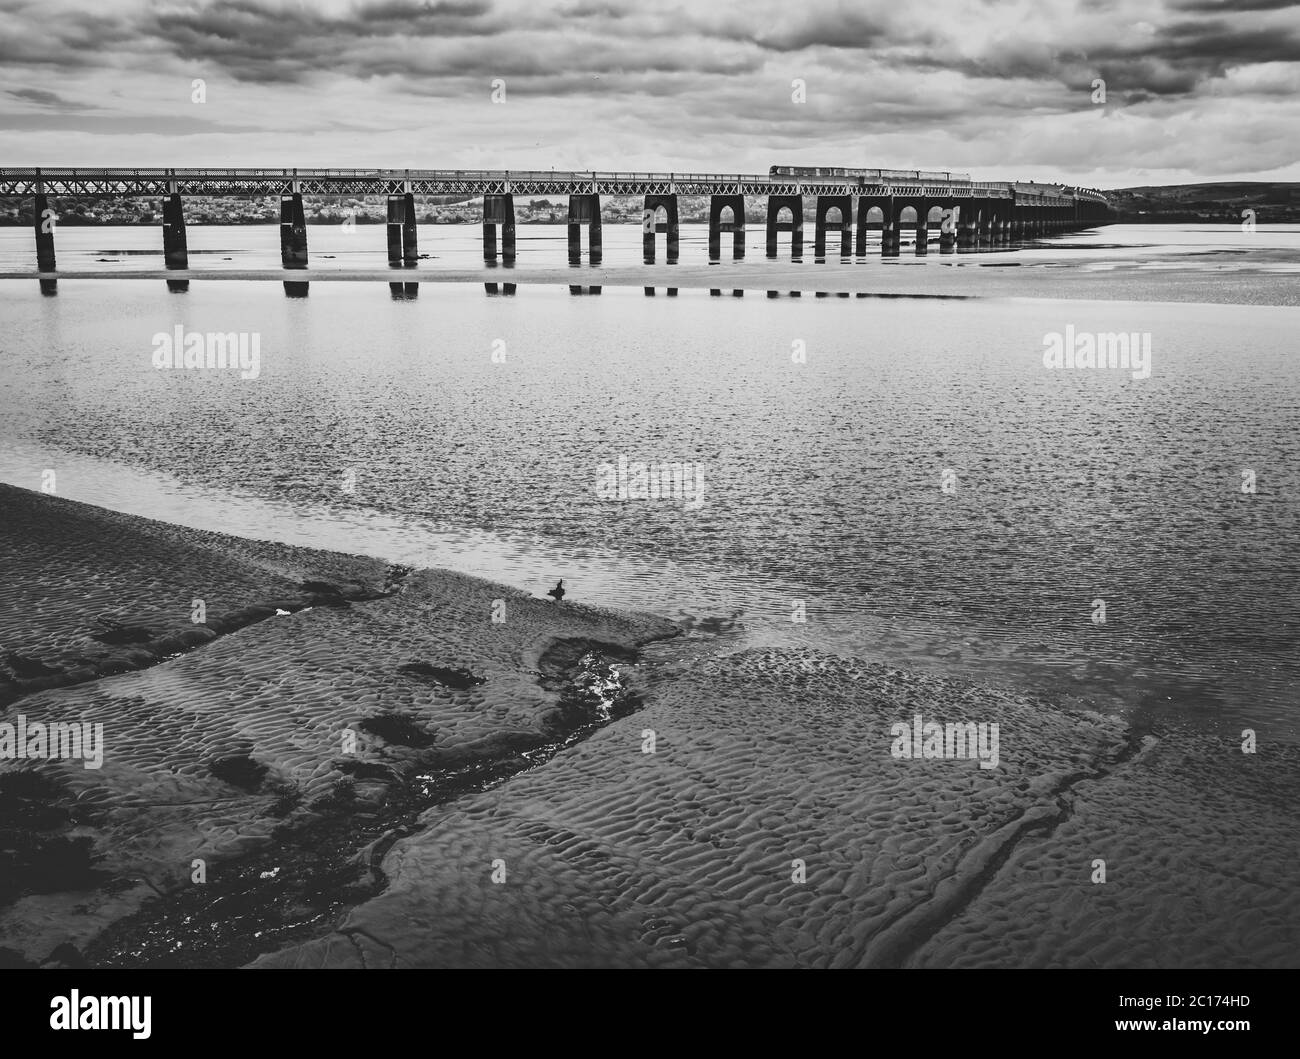 Immagine monocromatica del Tay e del Rail Bridge a bassa marea da Dundee, Scozia, Regno Unito. Foto Stock